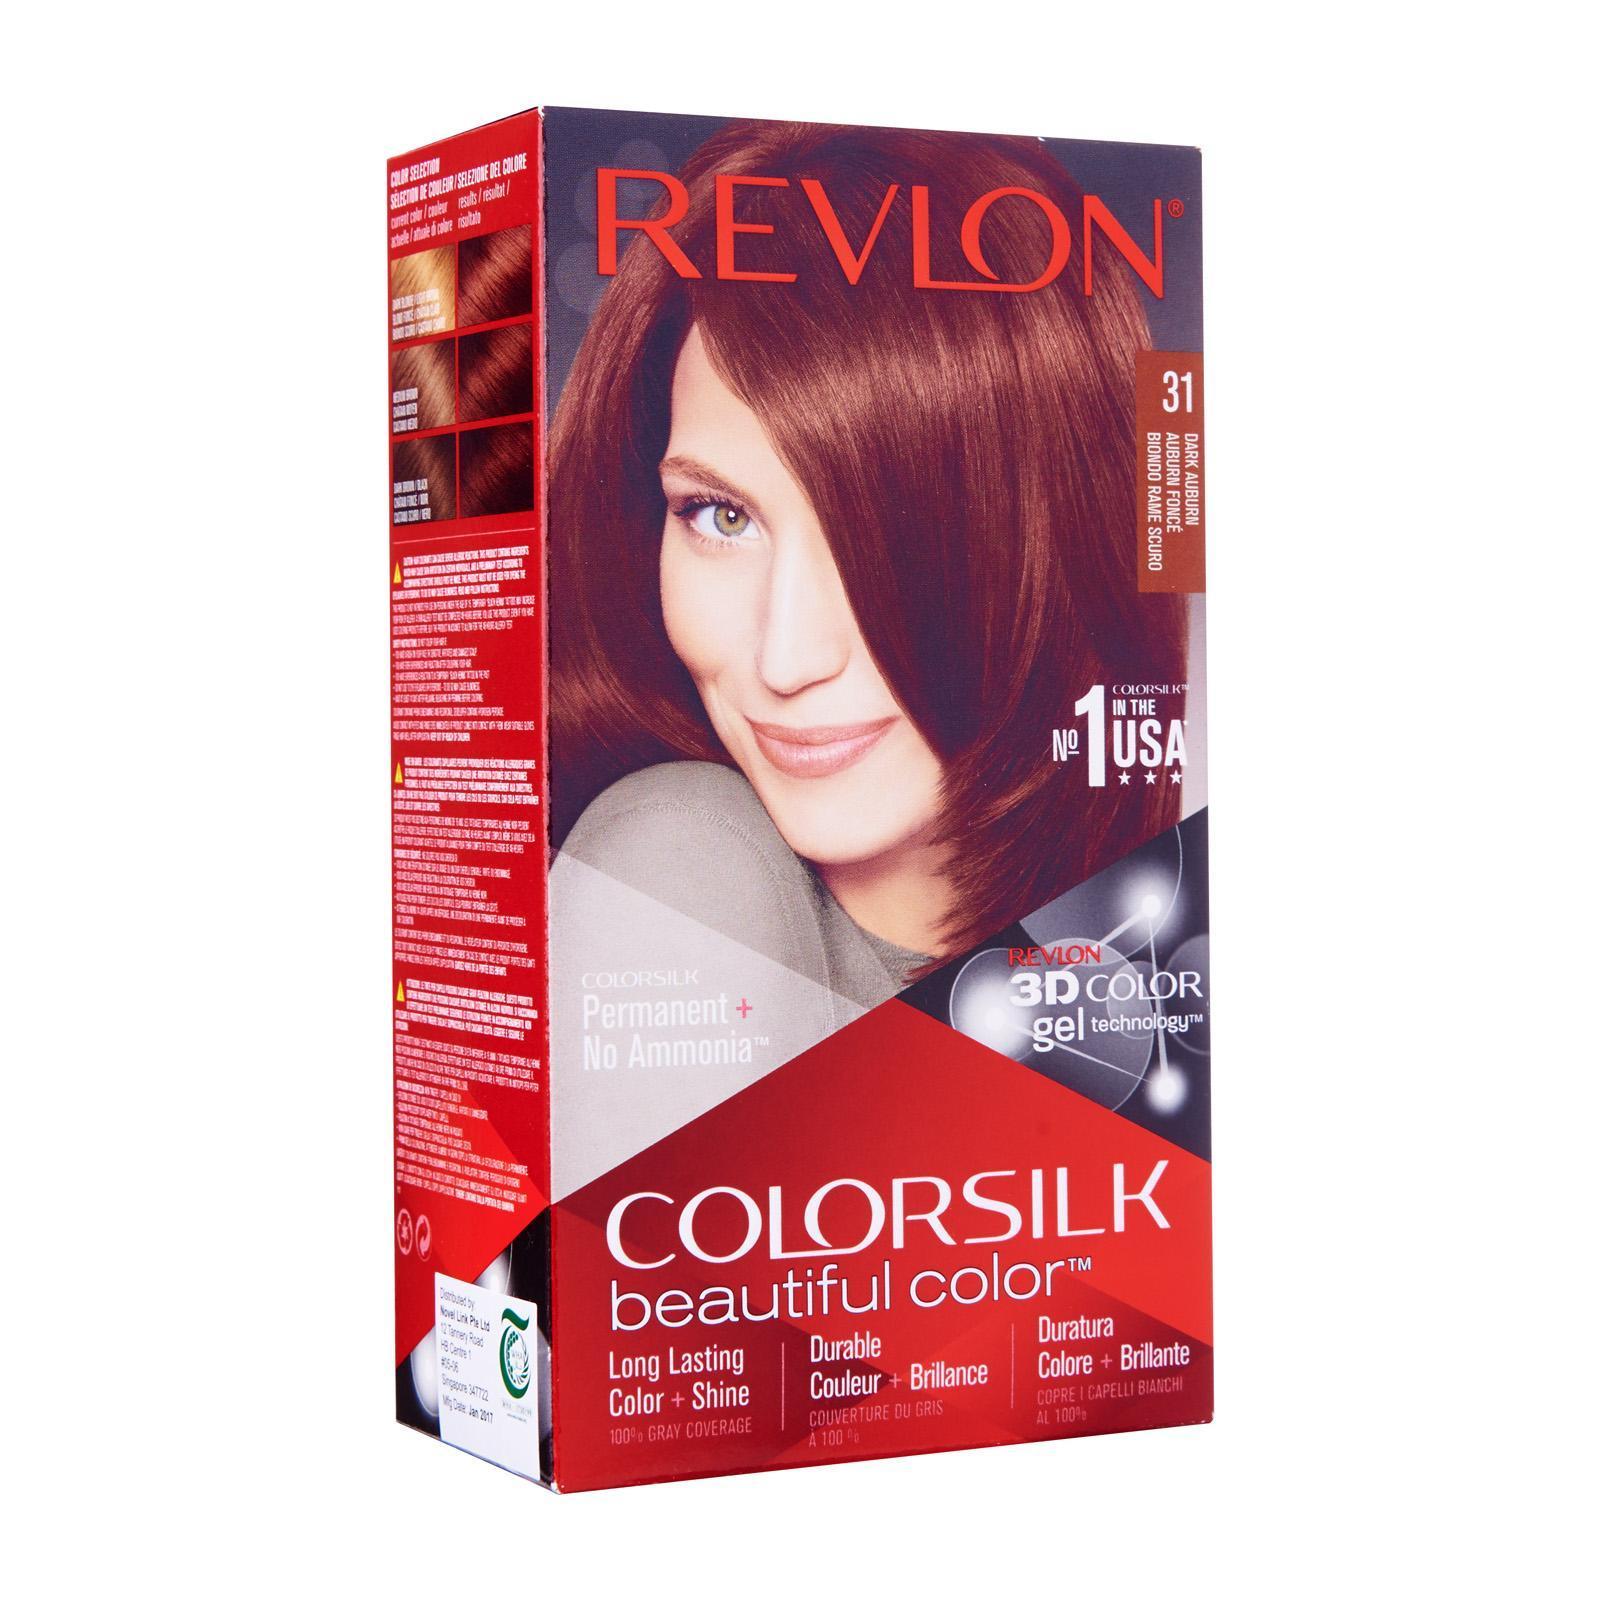 Revlon Colorsilk Dark Auburn 31 Hair Color